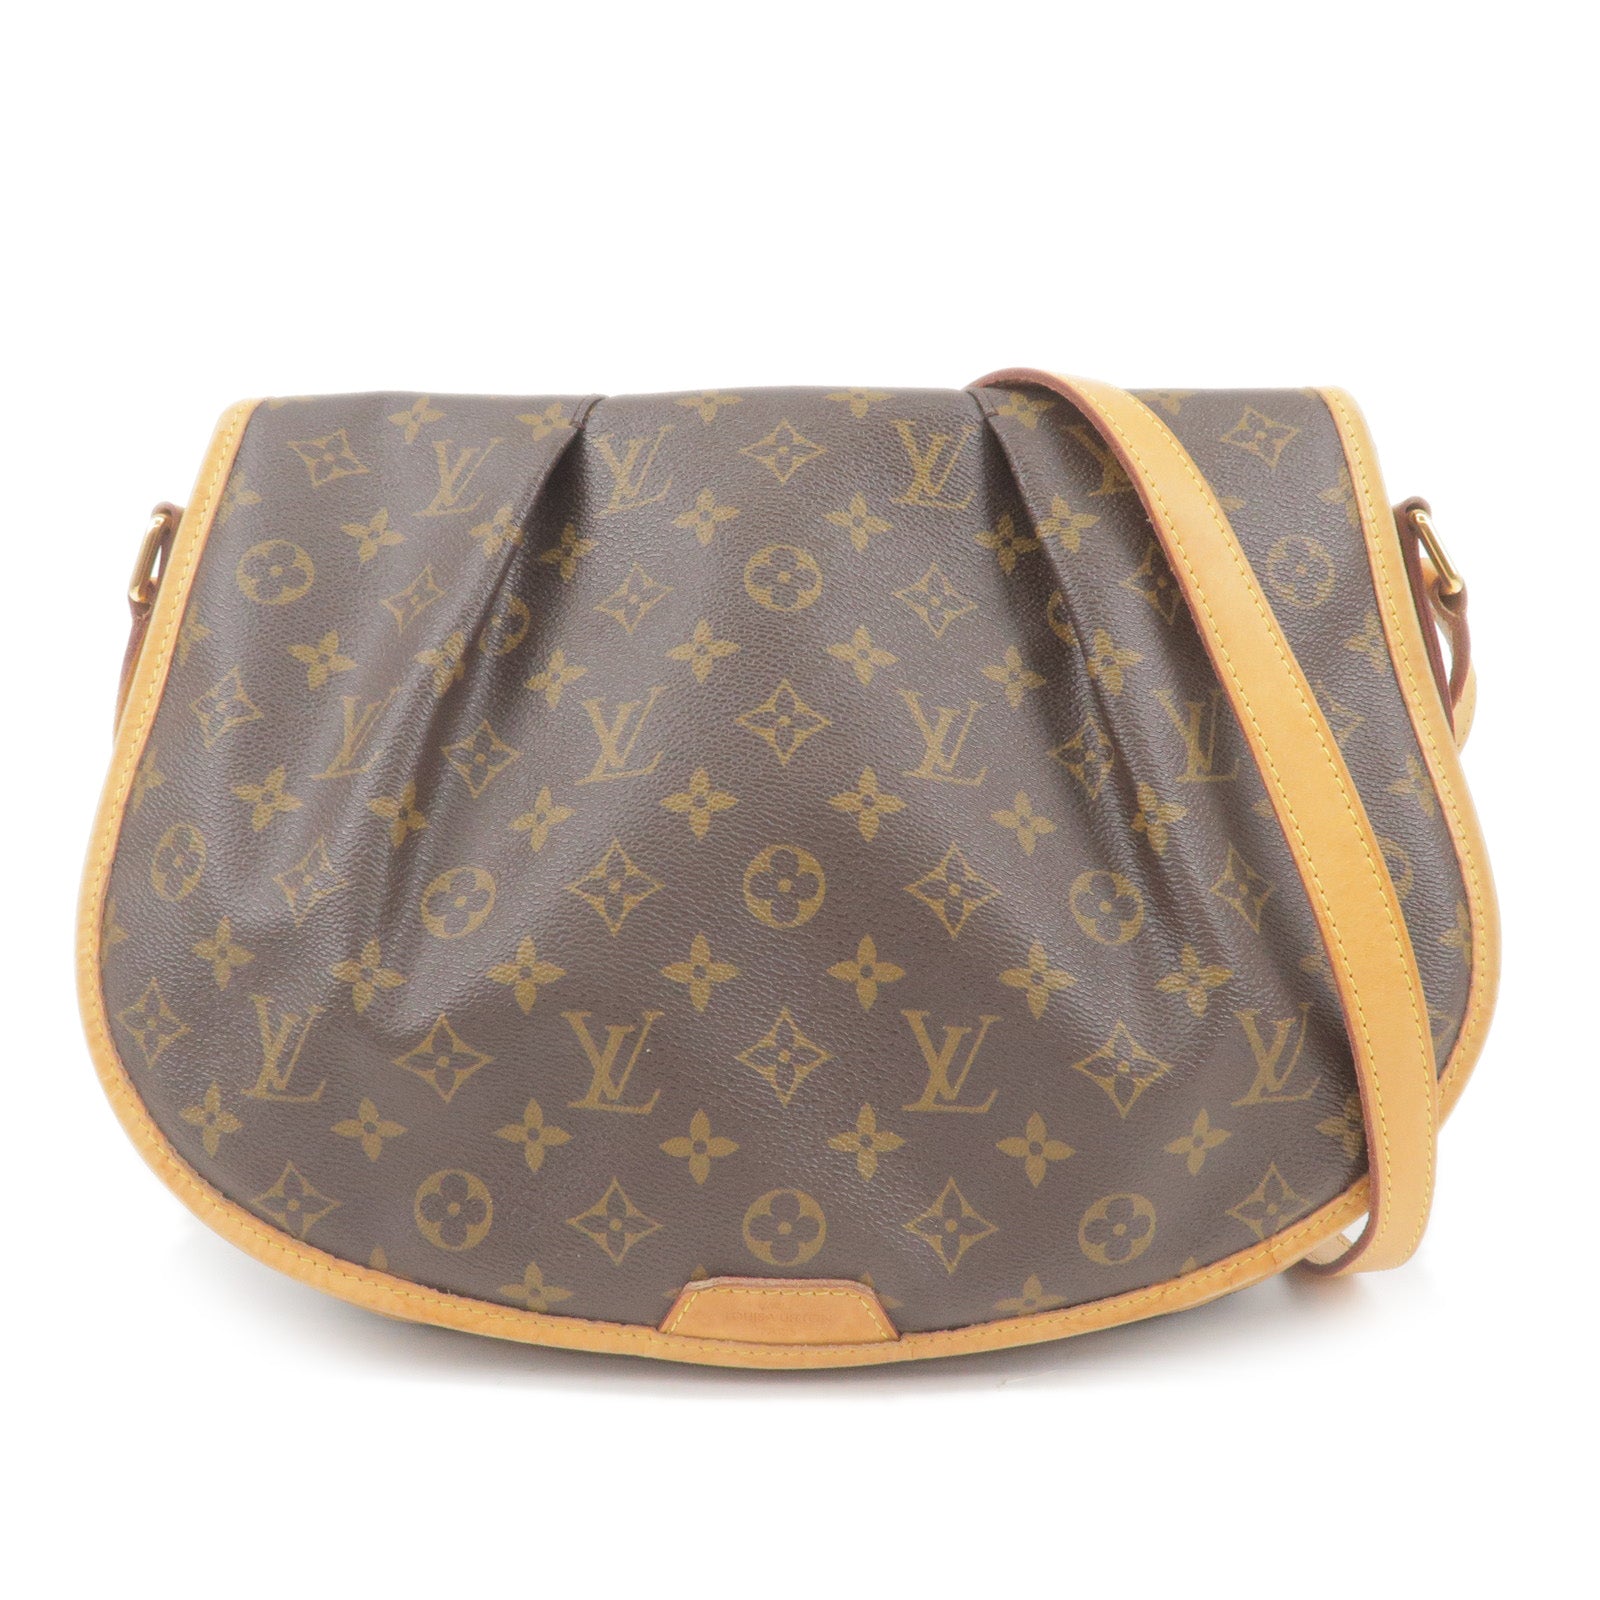 Authentic Louis Vuitton Monogram Menilmontant MM Shoulder Bag